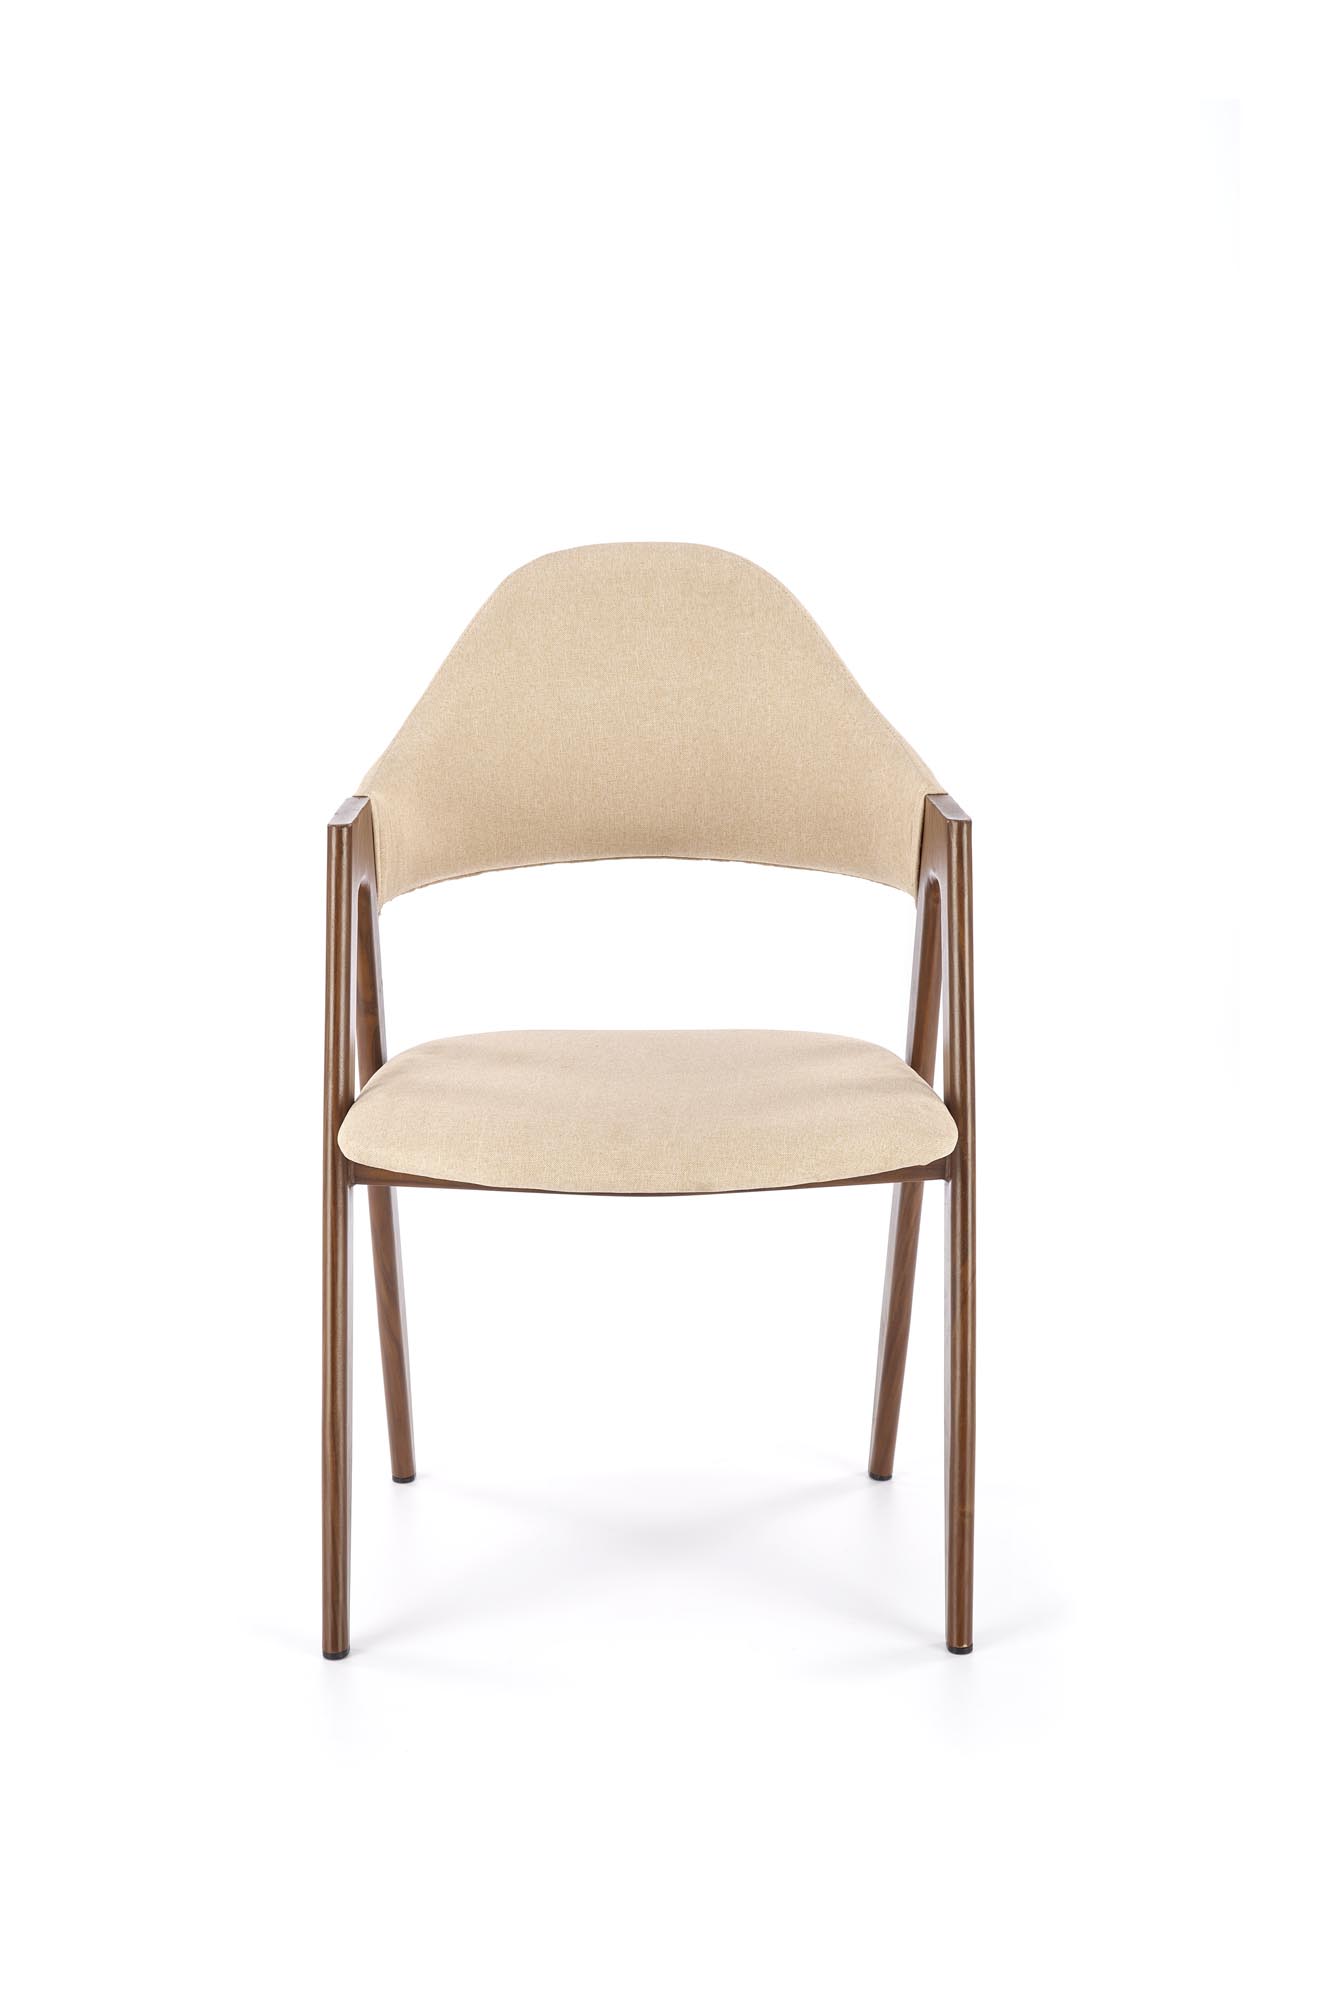 K344 székek - bézs (1p=2db) Židle čalouněné k344 - bezowe